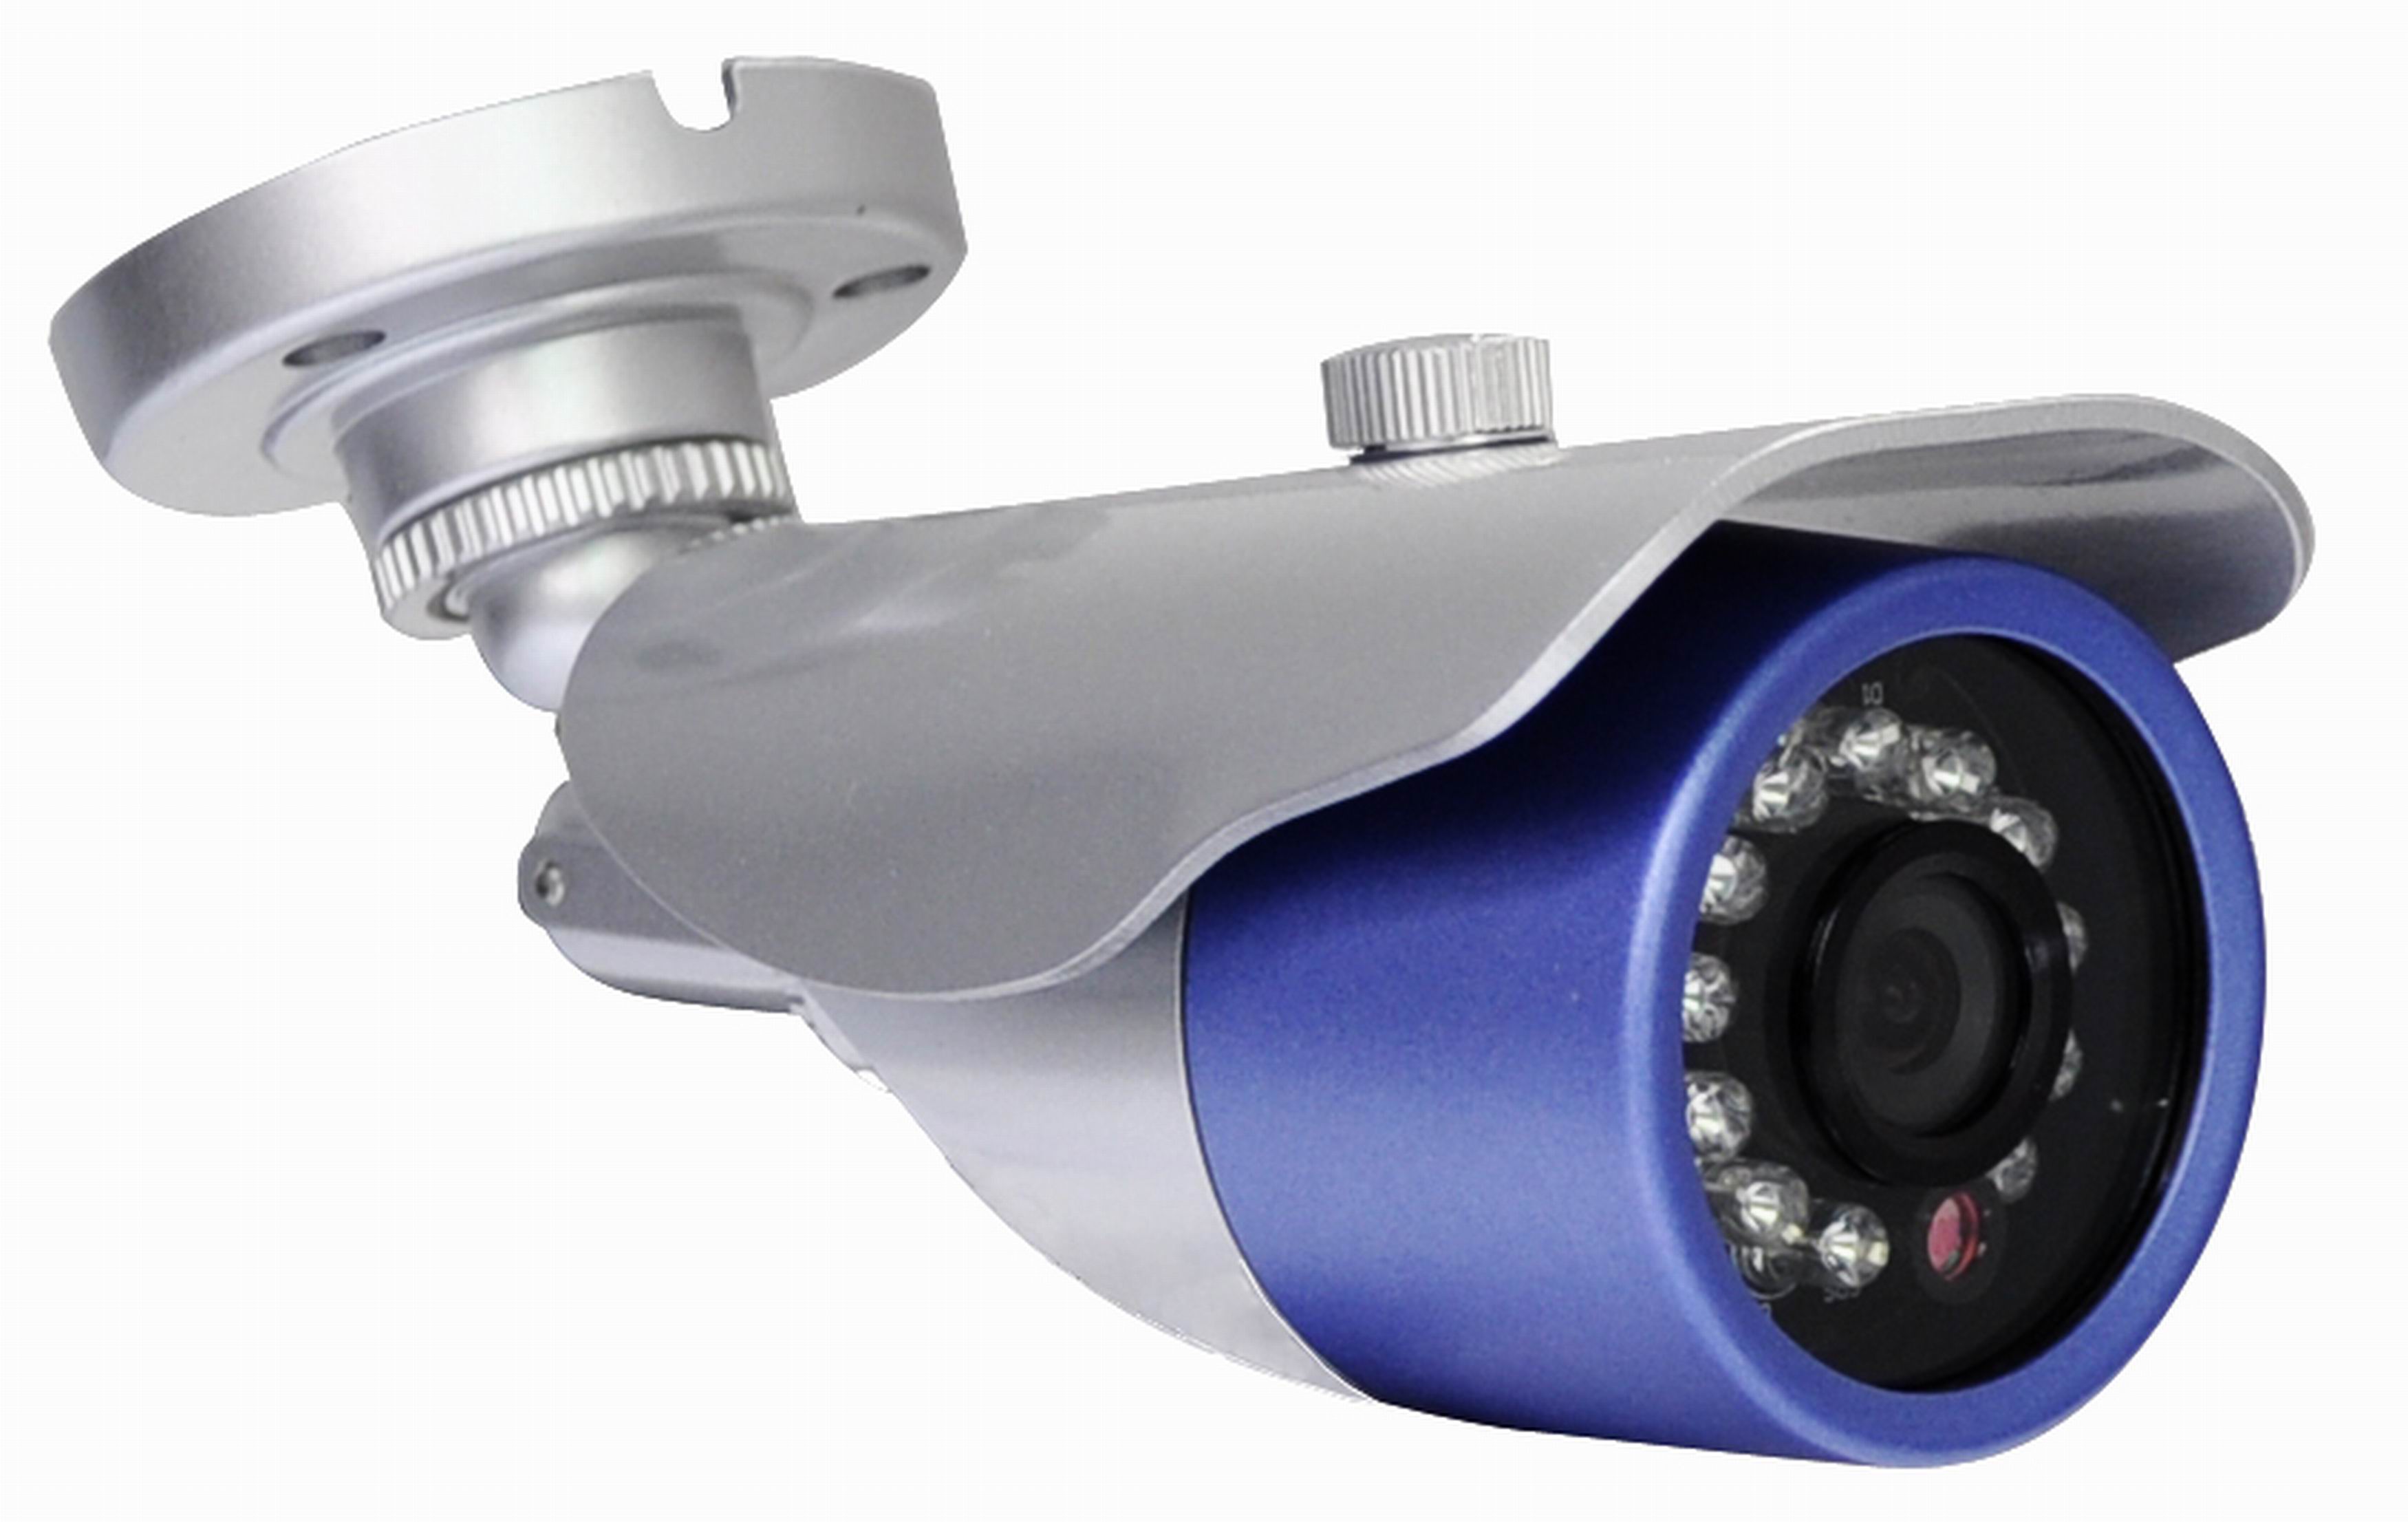 Камера дем. Камера наружного наблюдения Hikvision. NST-ipx3925 камера видеонаблюдения. Камера наблюдения Iris DF-242sh. CCTV камера 3д.